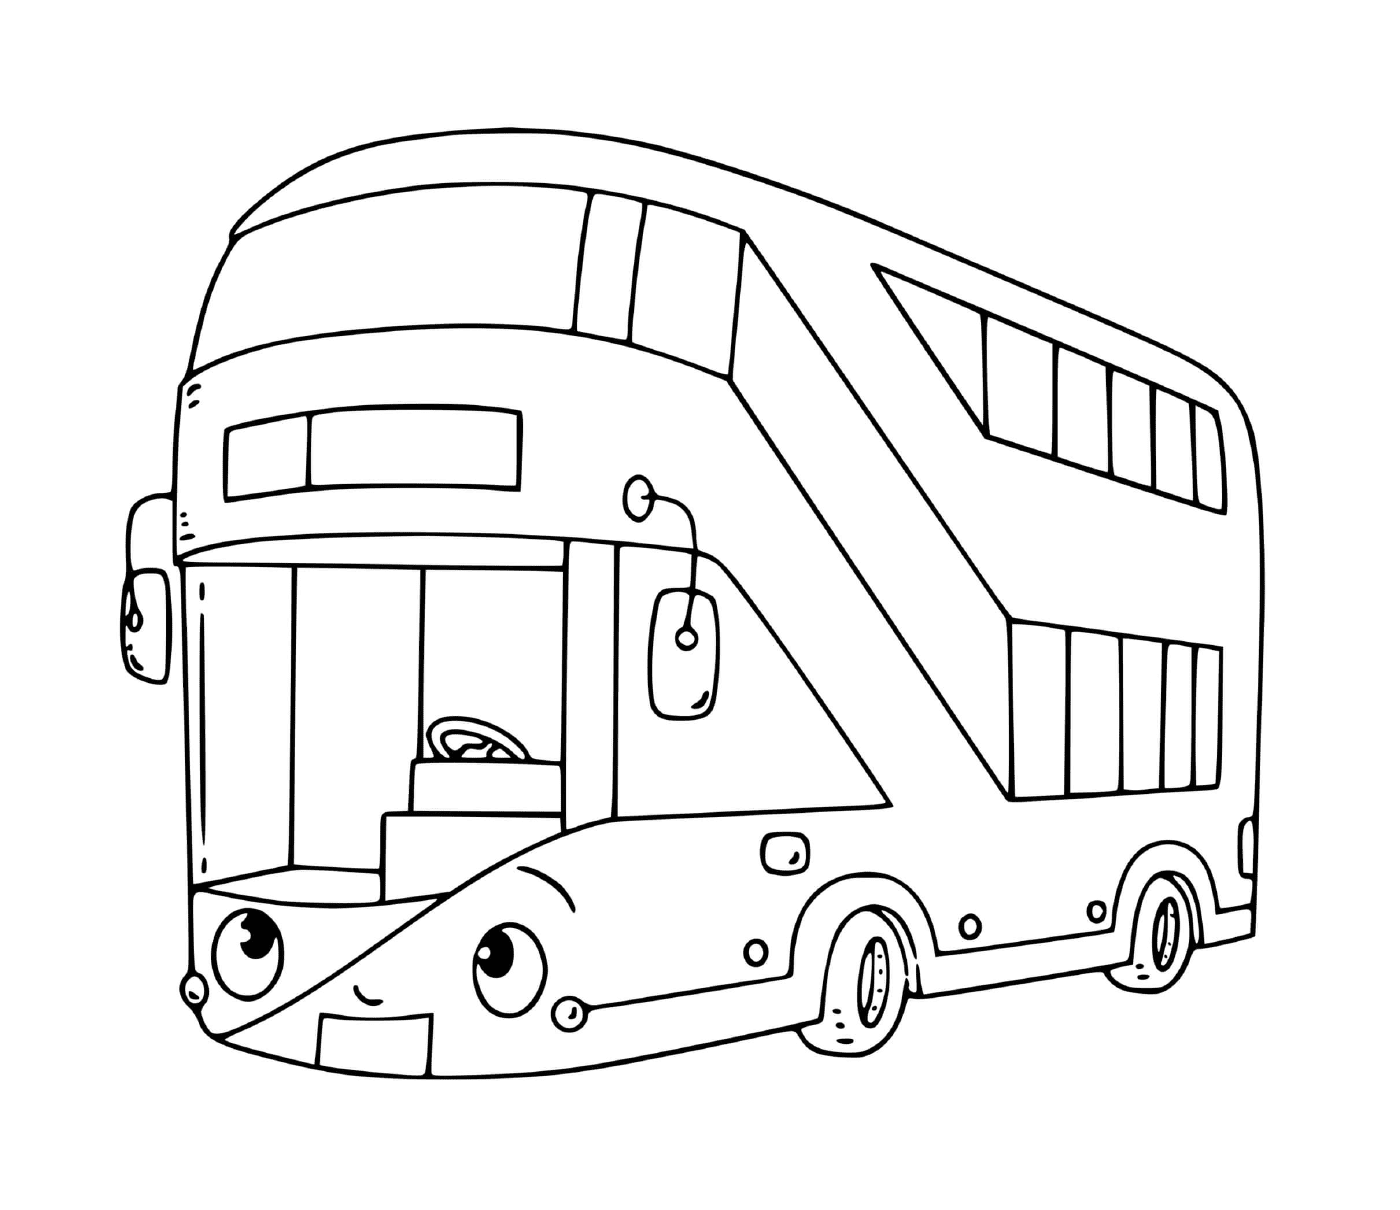  一辆两层运输用公共汽车 